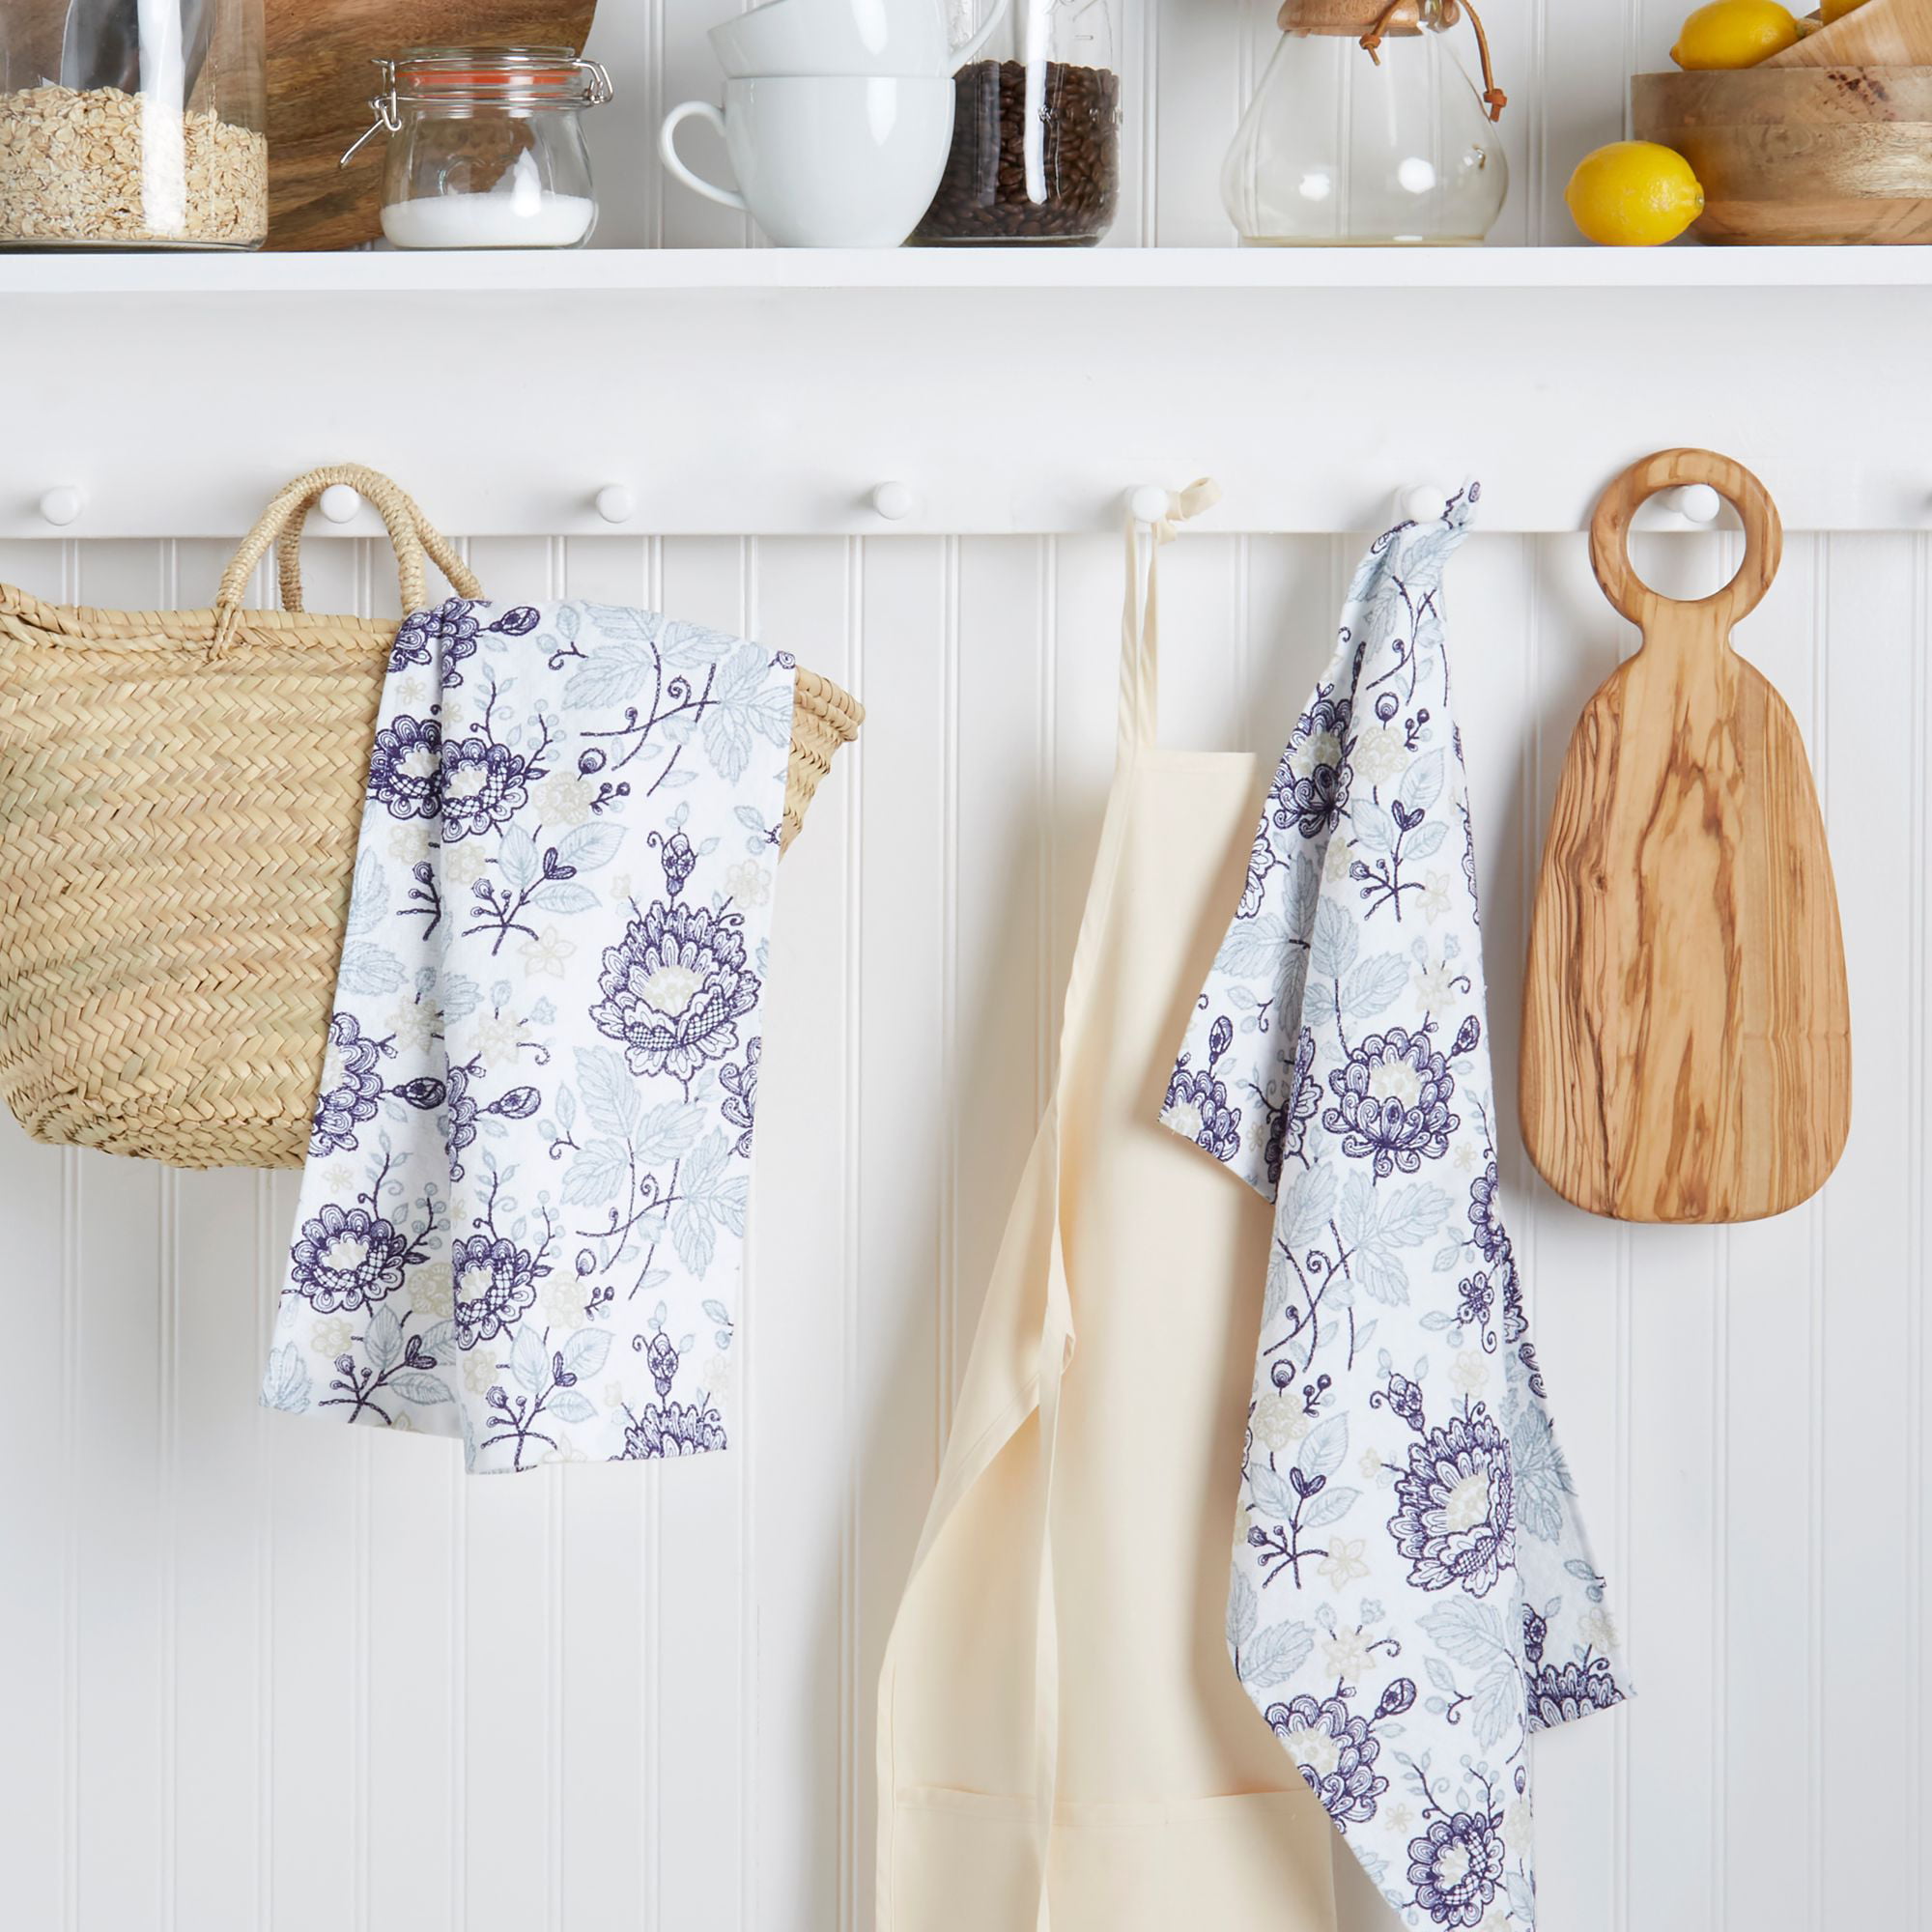 New S/2 Fruit Lemon Daisies Kitchen Dish Towels Tea Cotton Dual Purpose Towels 